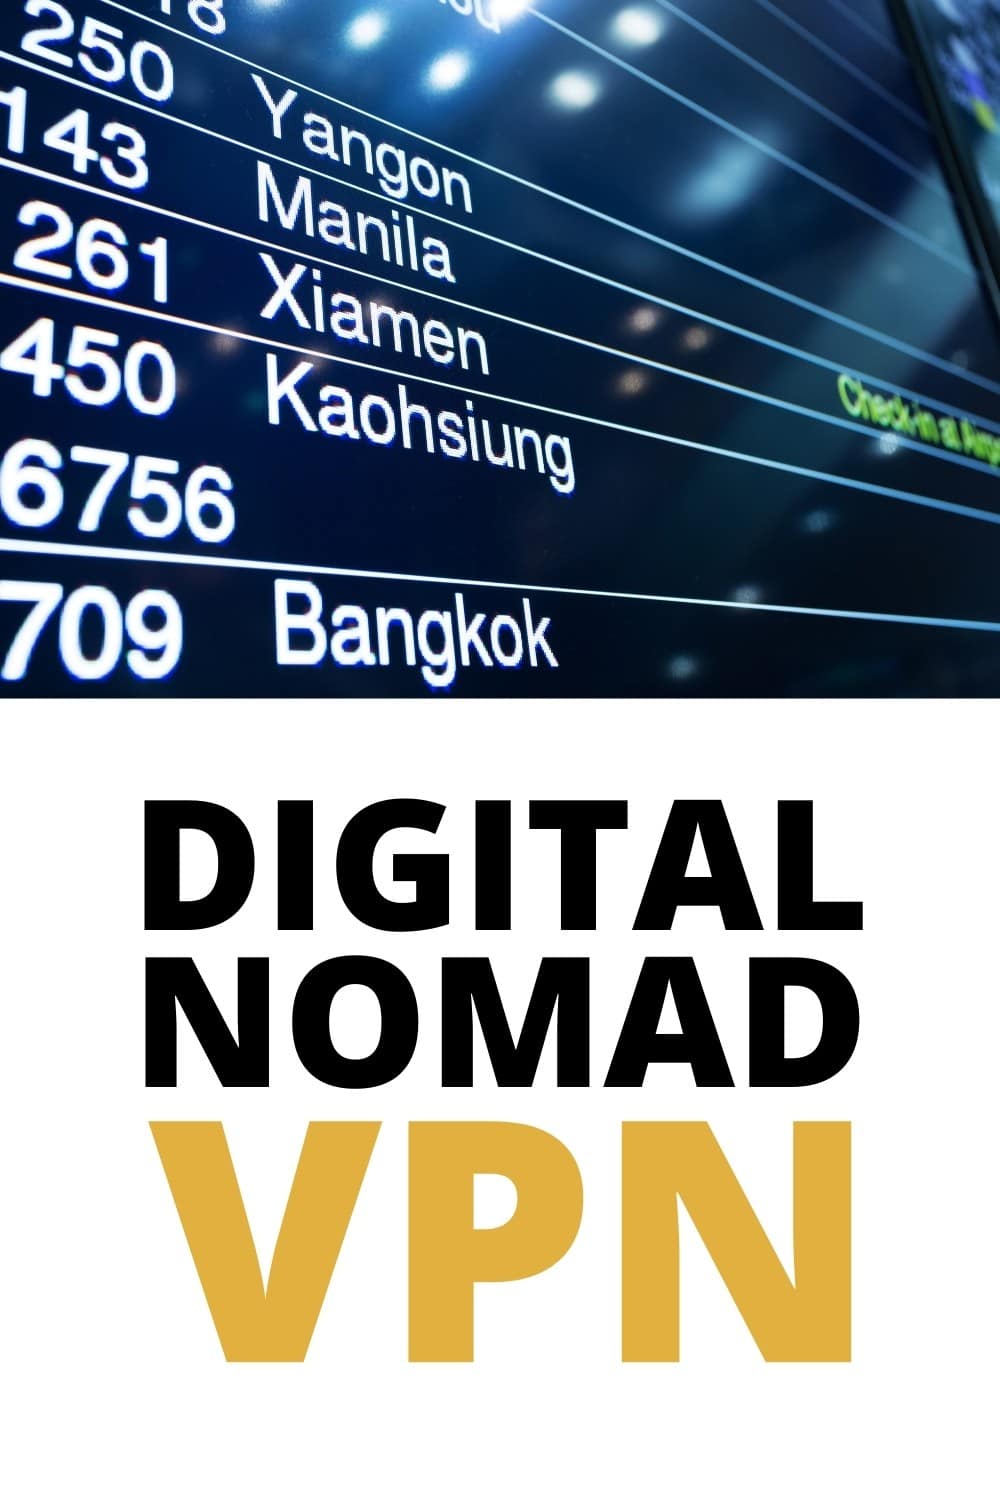 digital nomad vpn guide pinterest